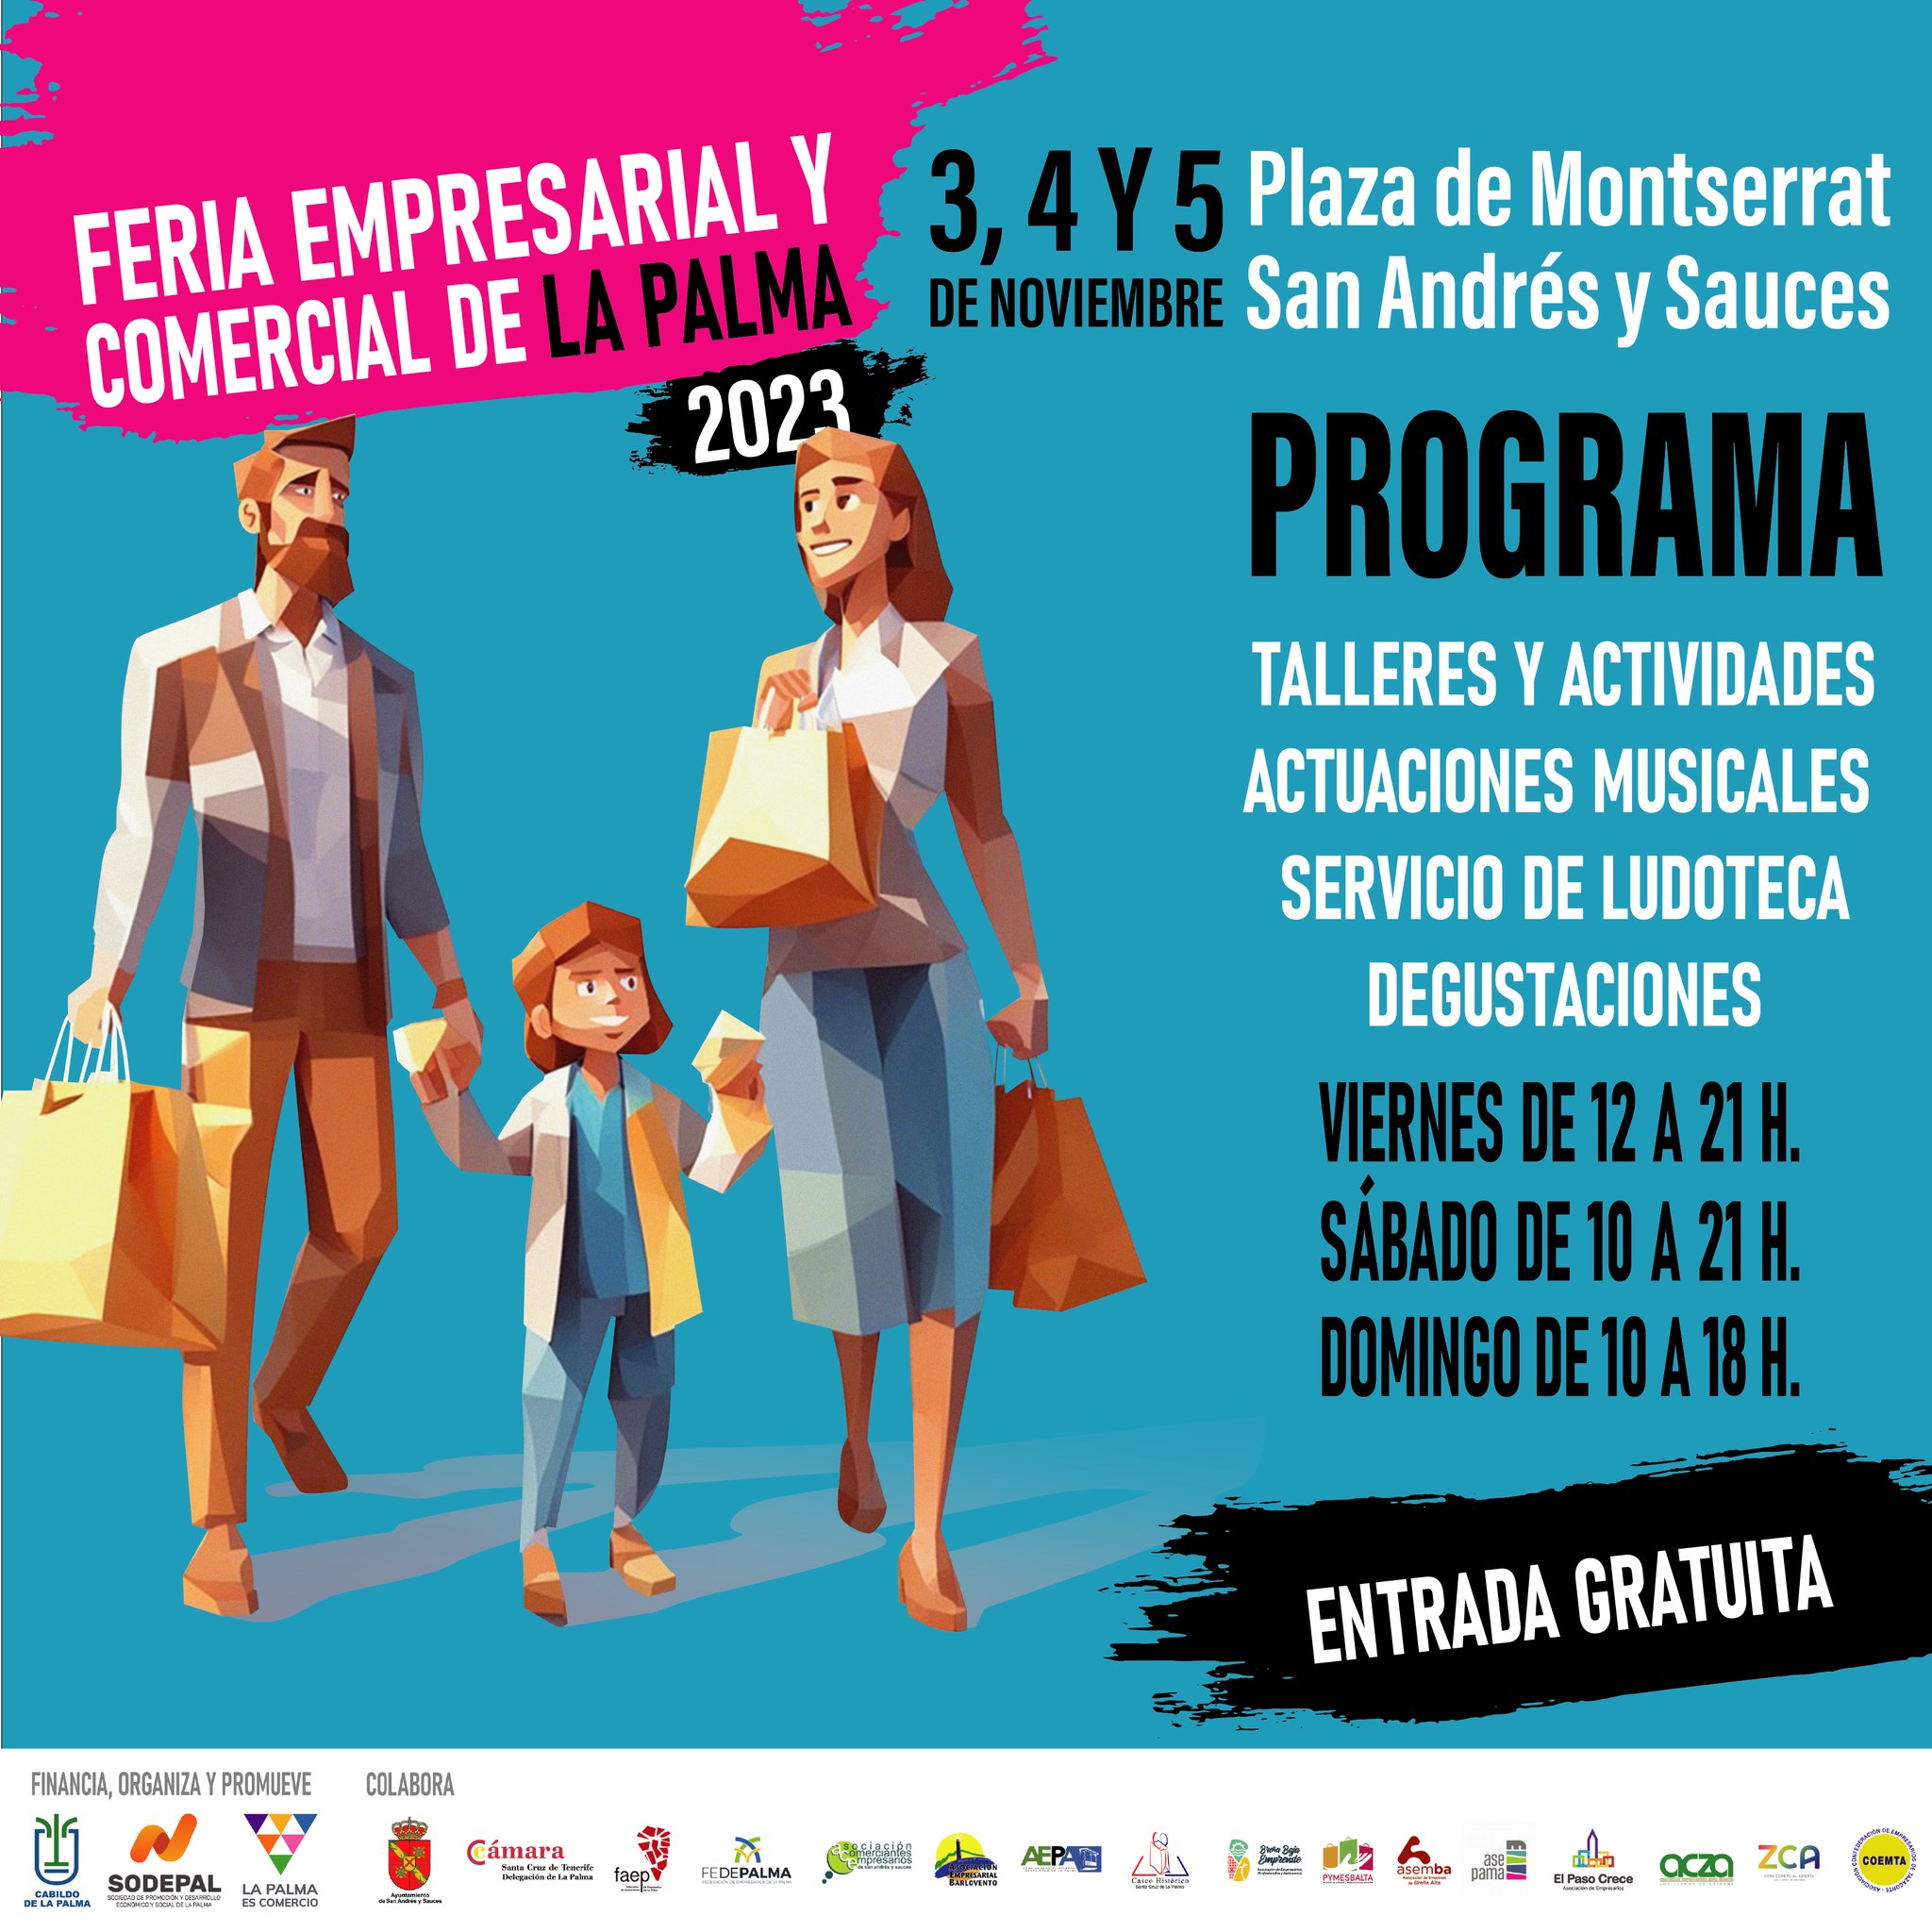 San Andrés y Sauces acoge la Feria Empresarial y Comercial de La Palma